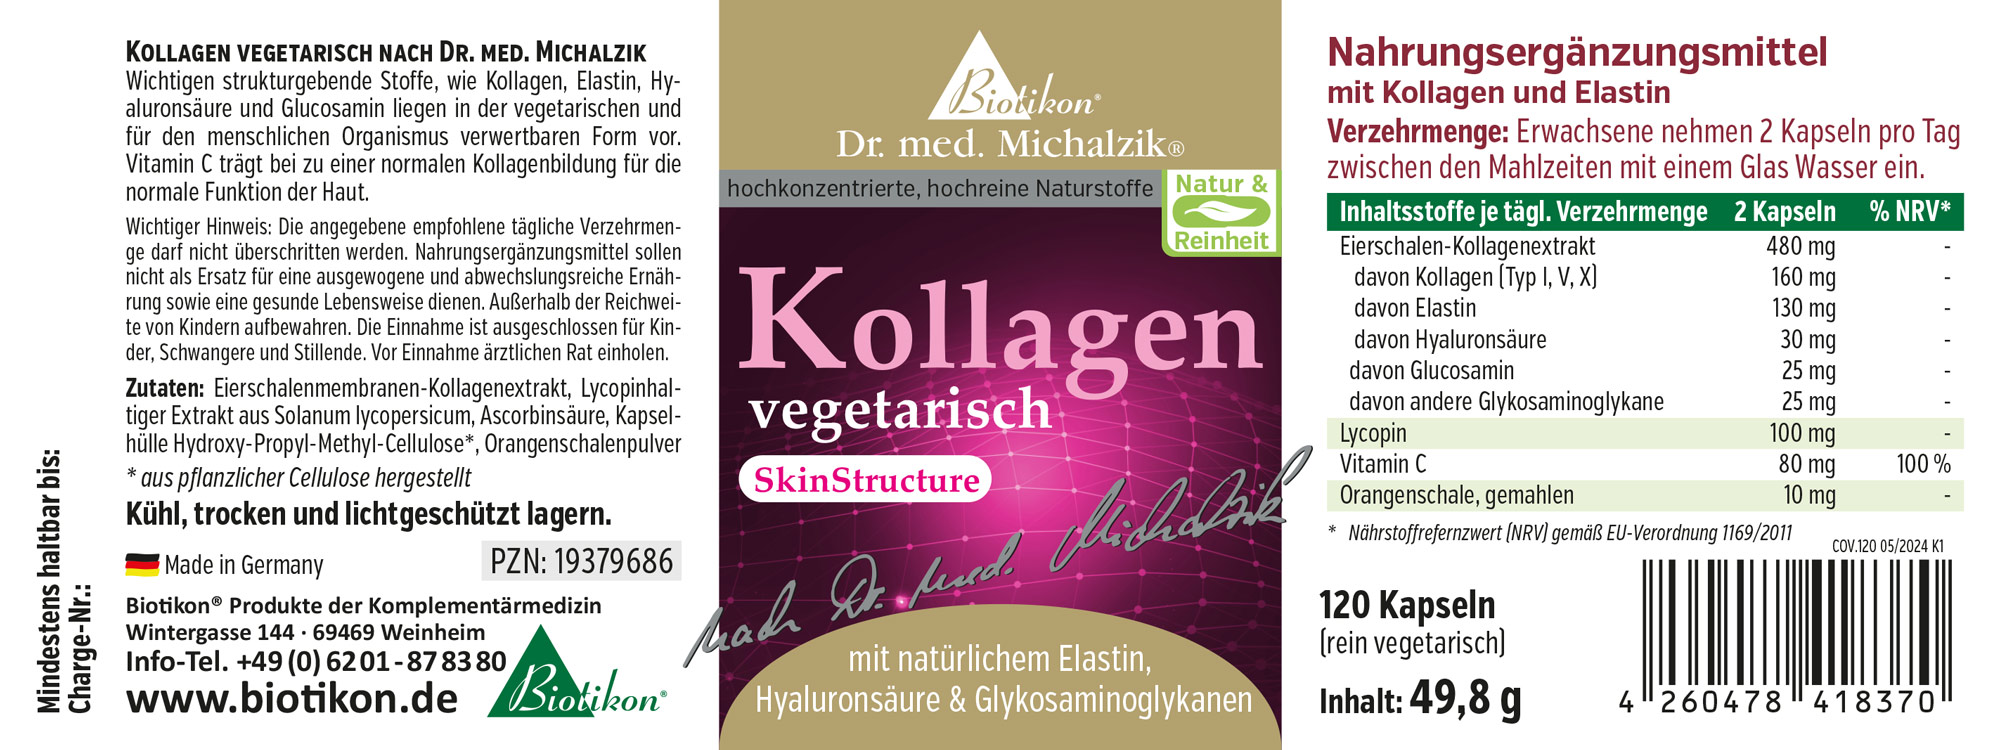 Kollagen vegetarisch SkinStructure